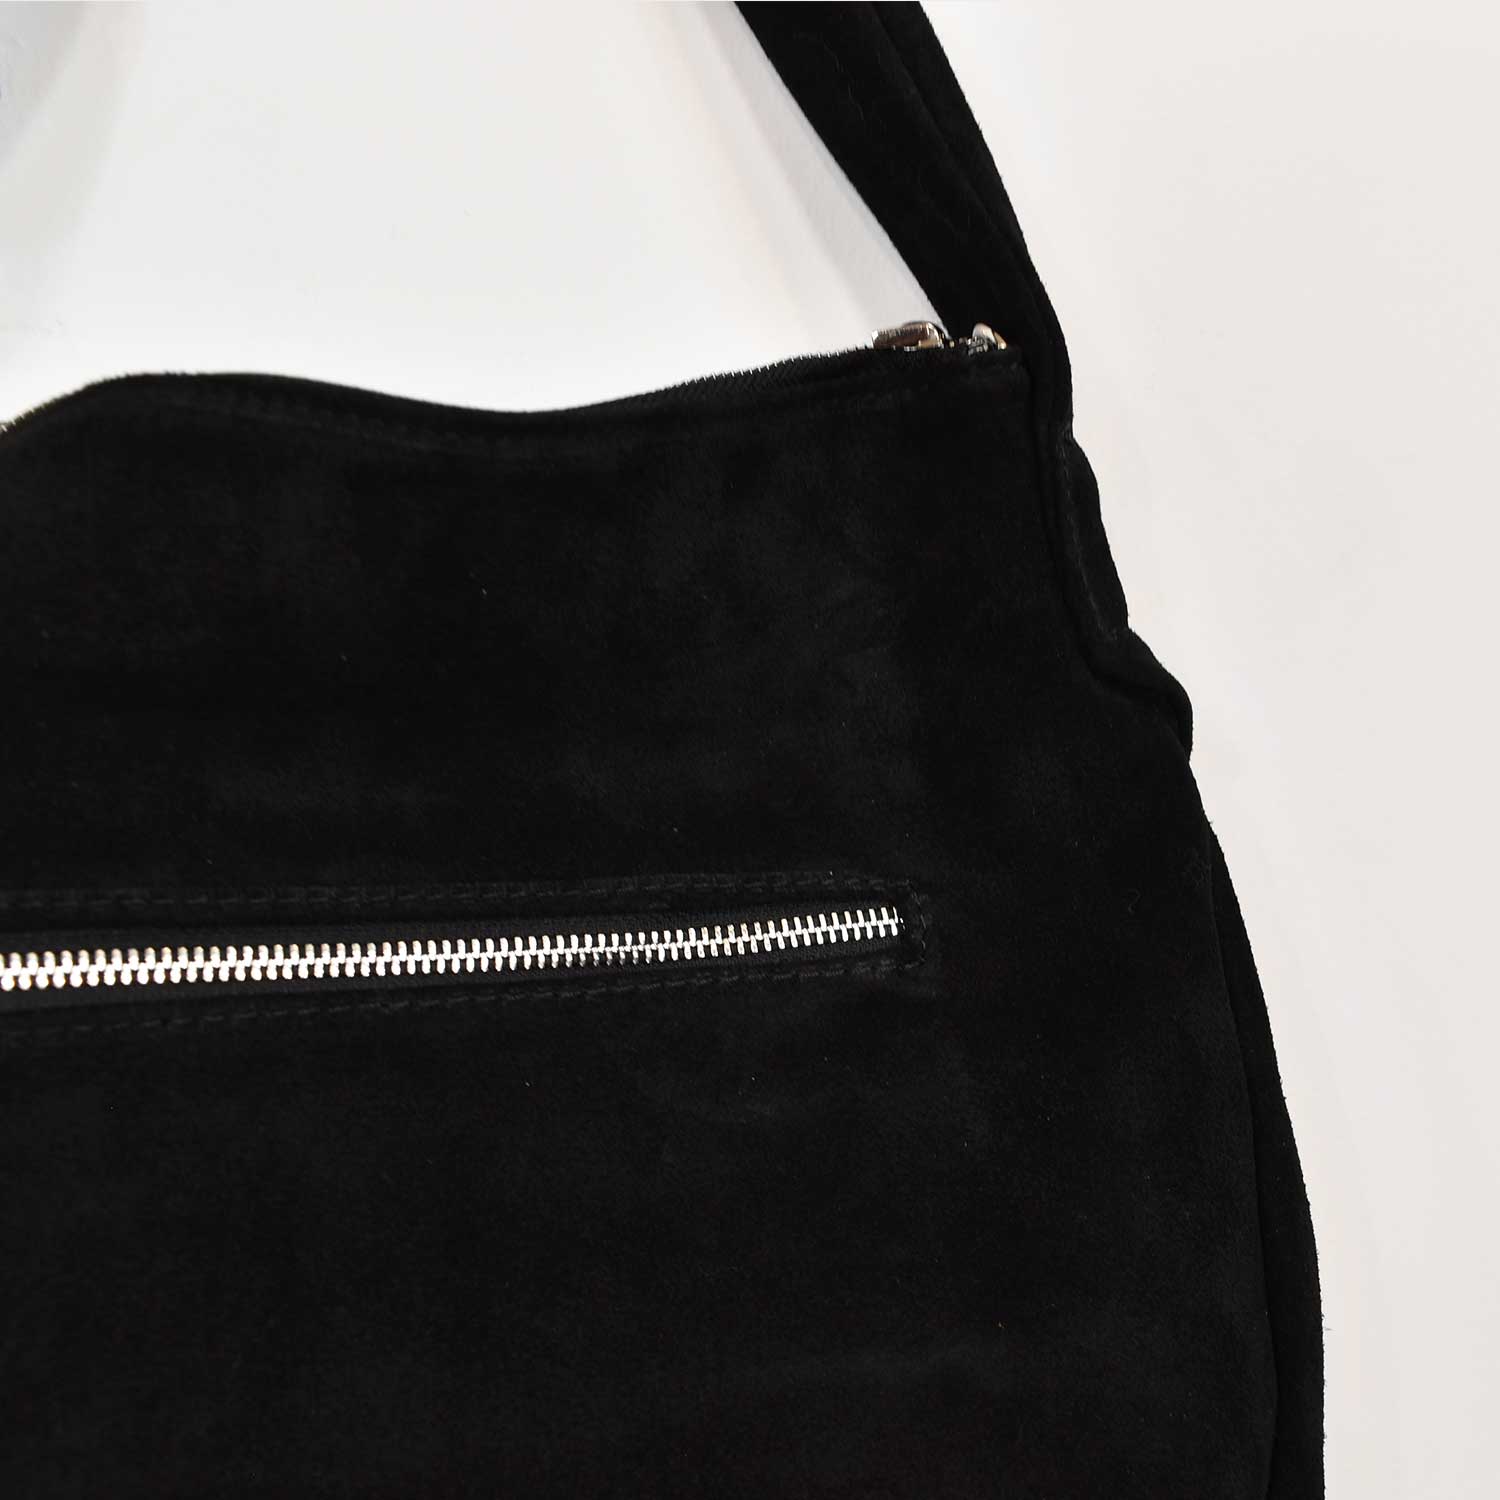 Black suede leather handbag
